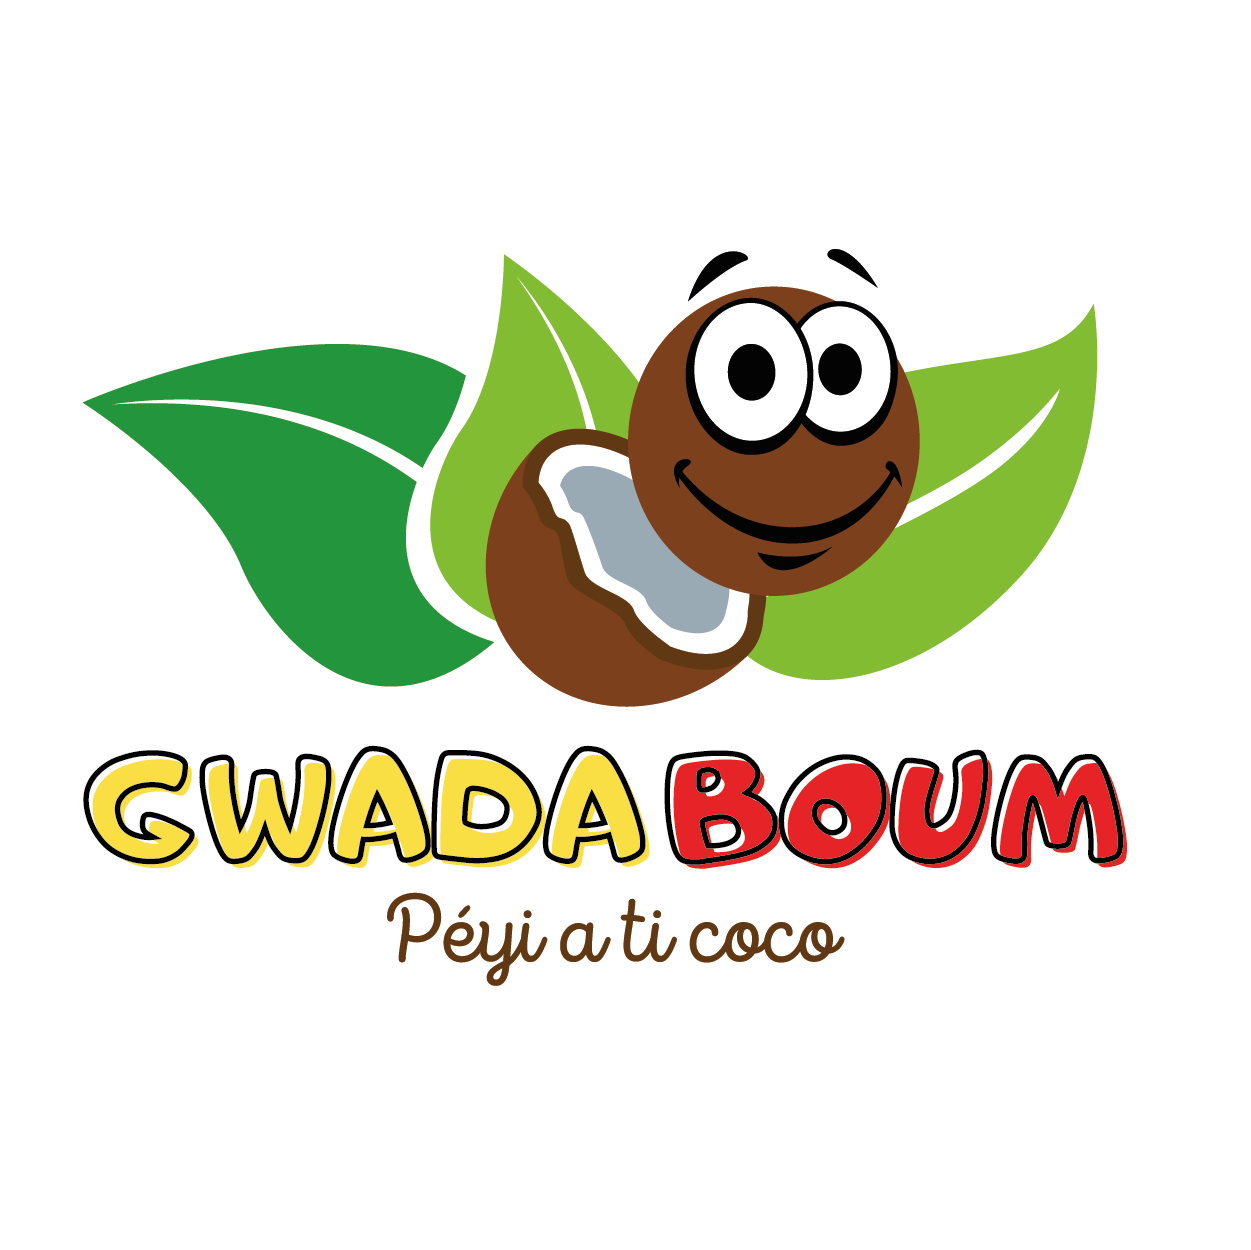 (c) Gwadaboum.com